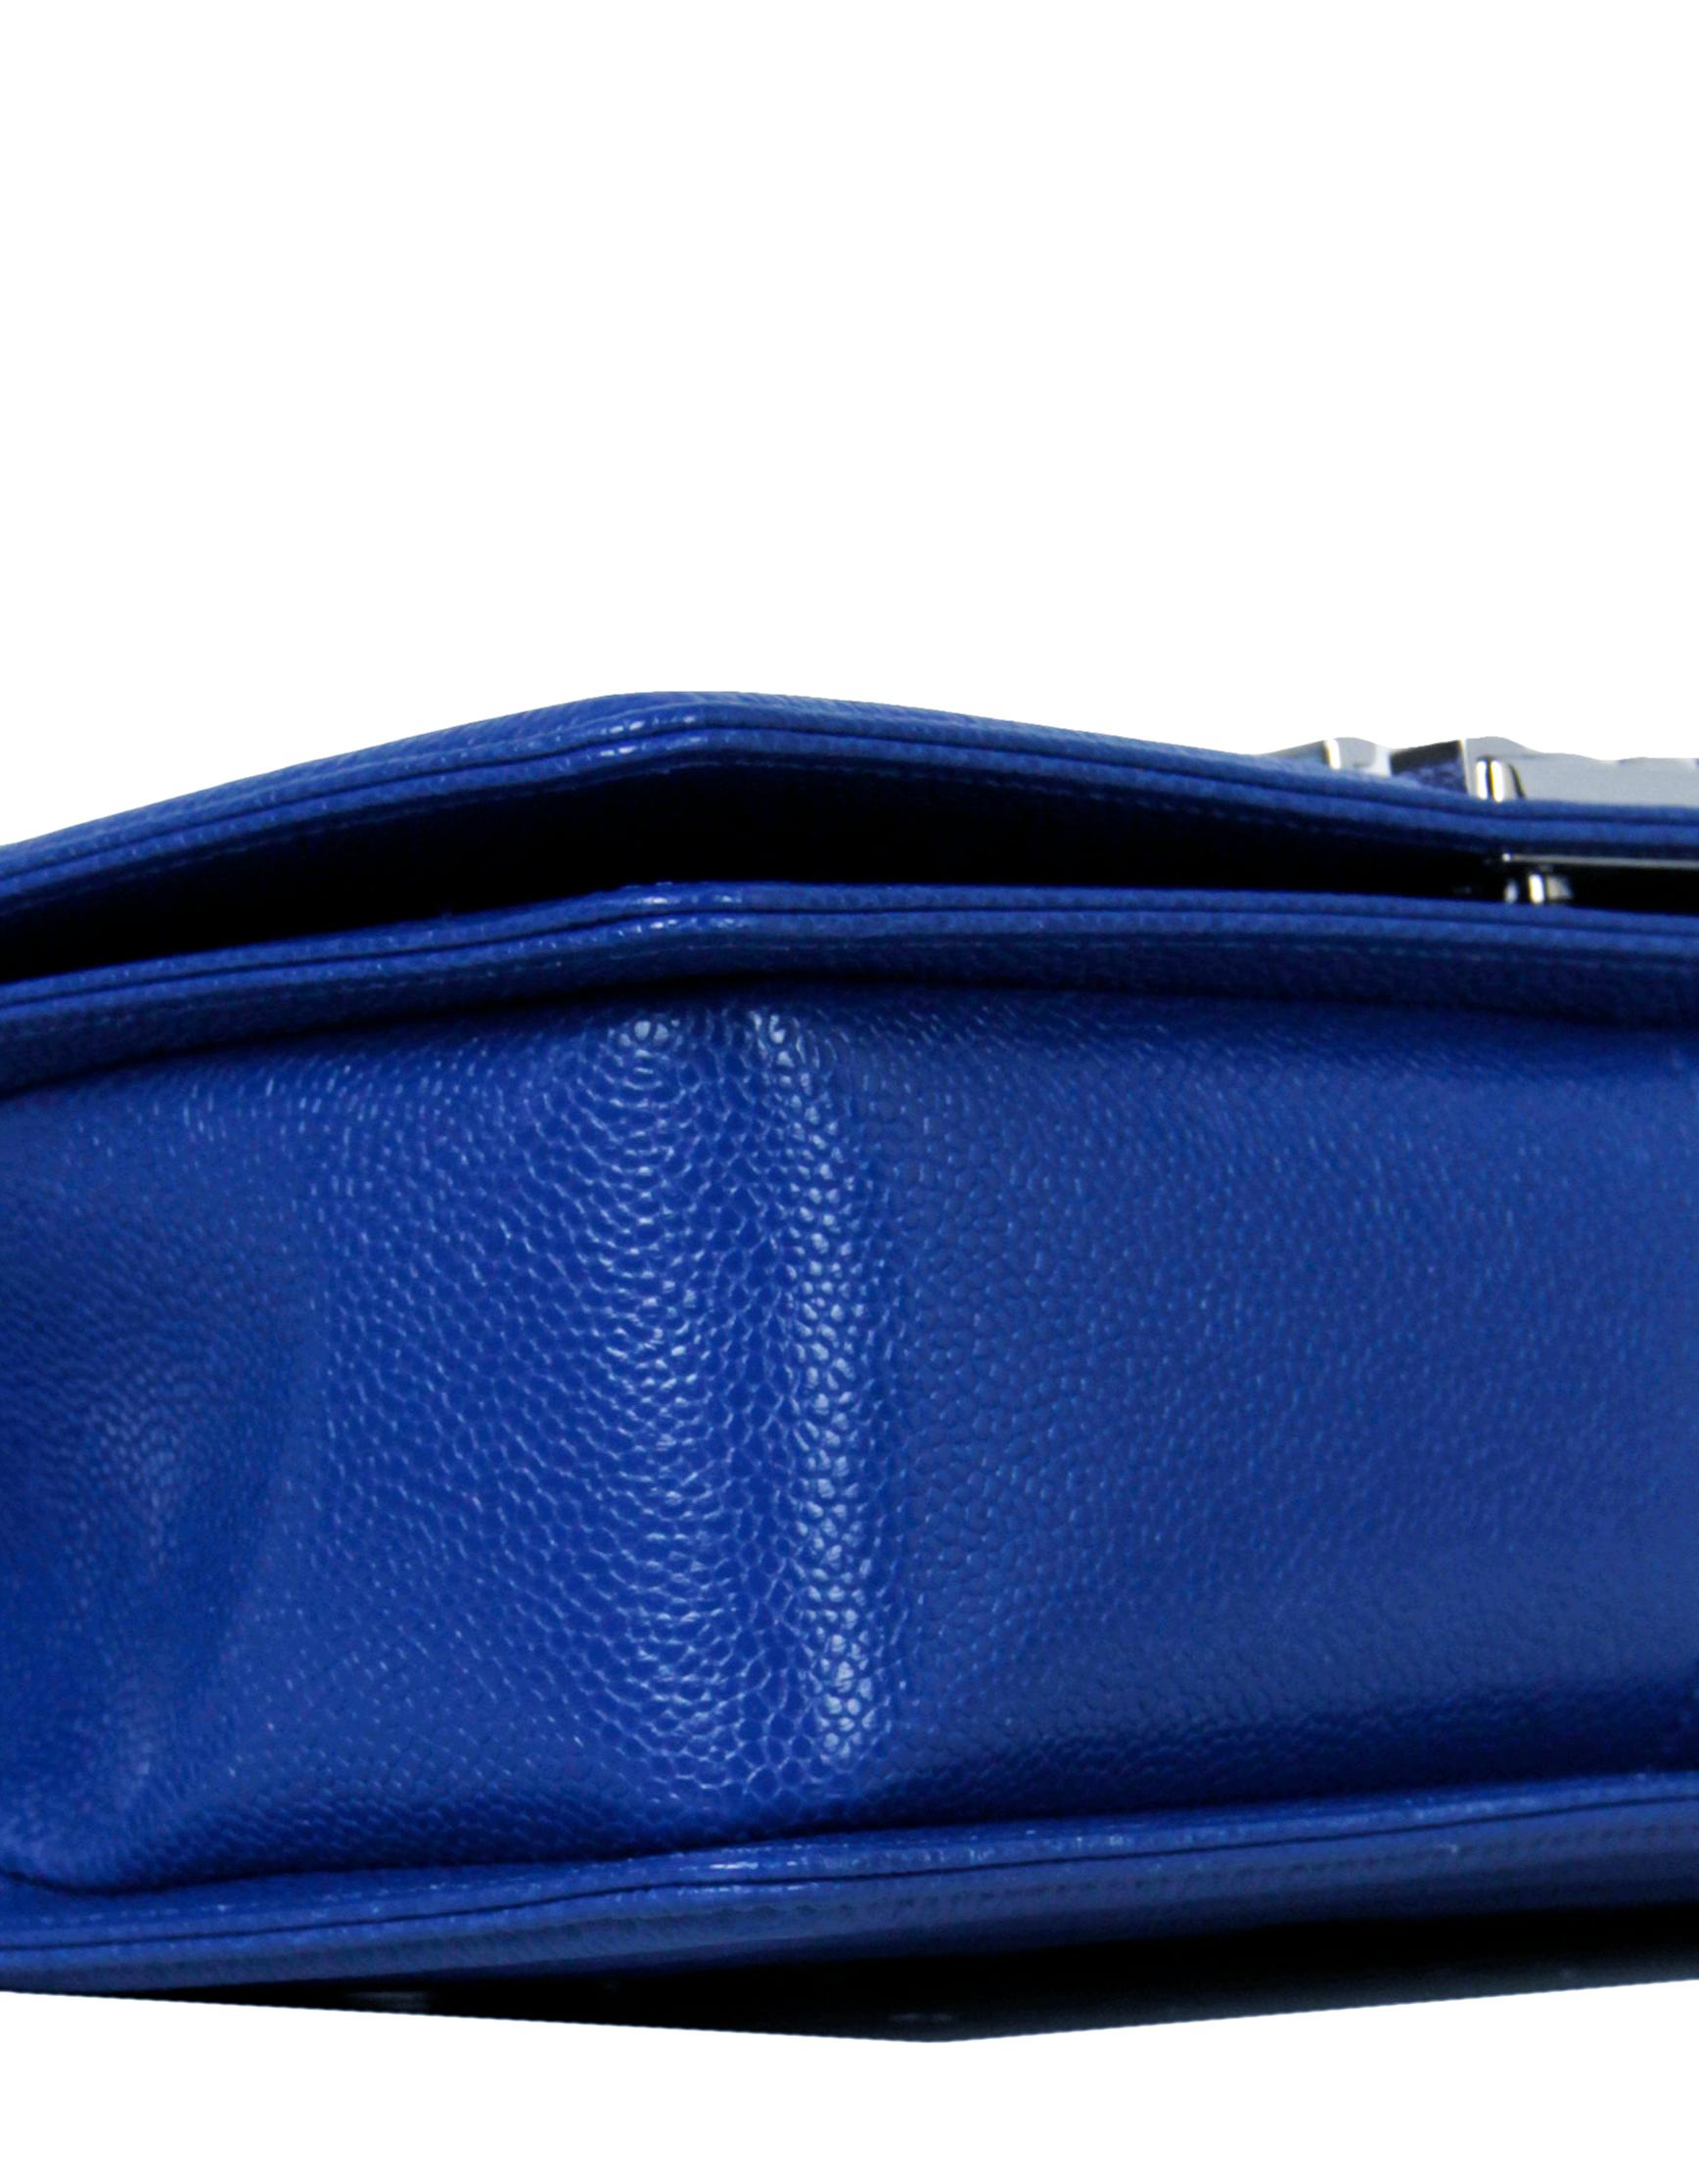 royal blue designer bag